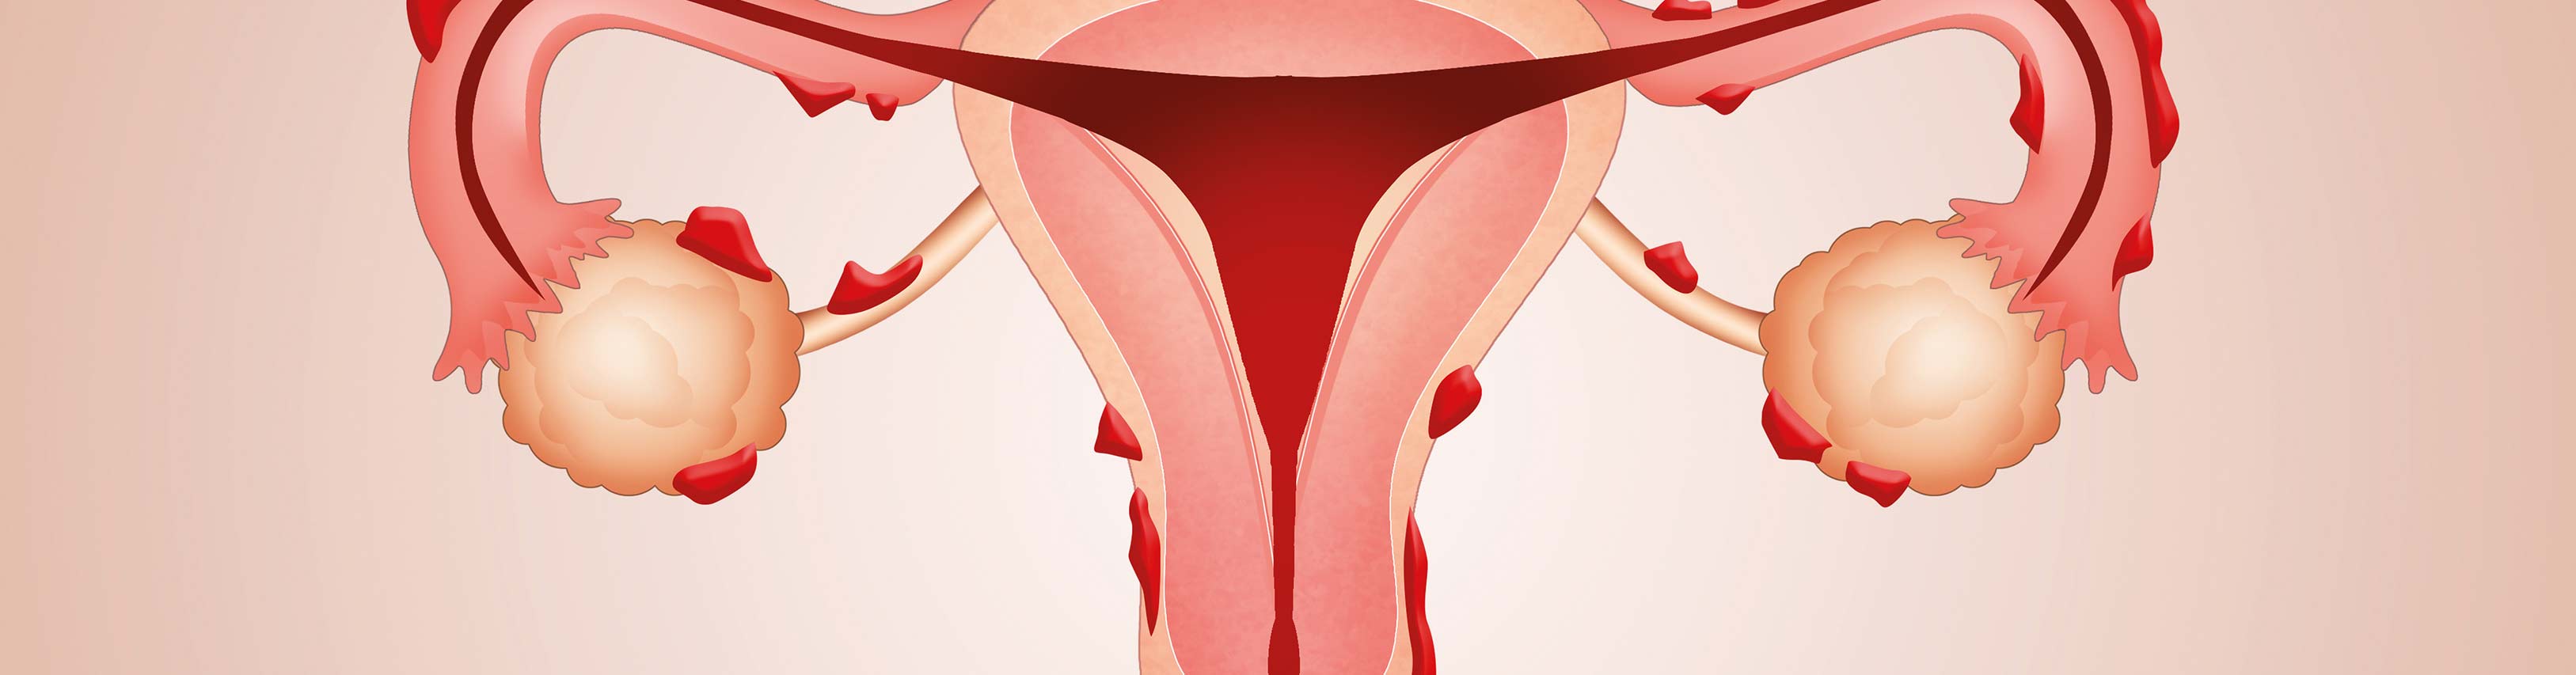 Endometriose - Rechtzeitig erkennen und gezielt behandeln